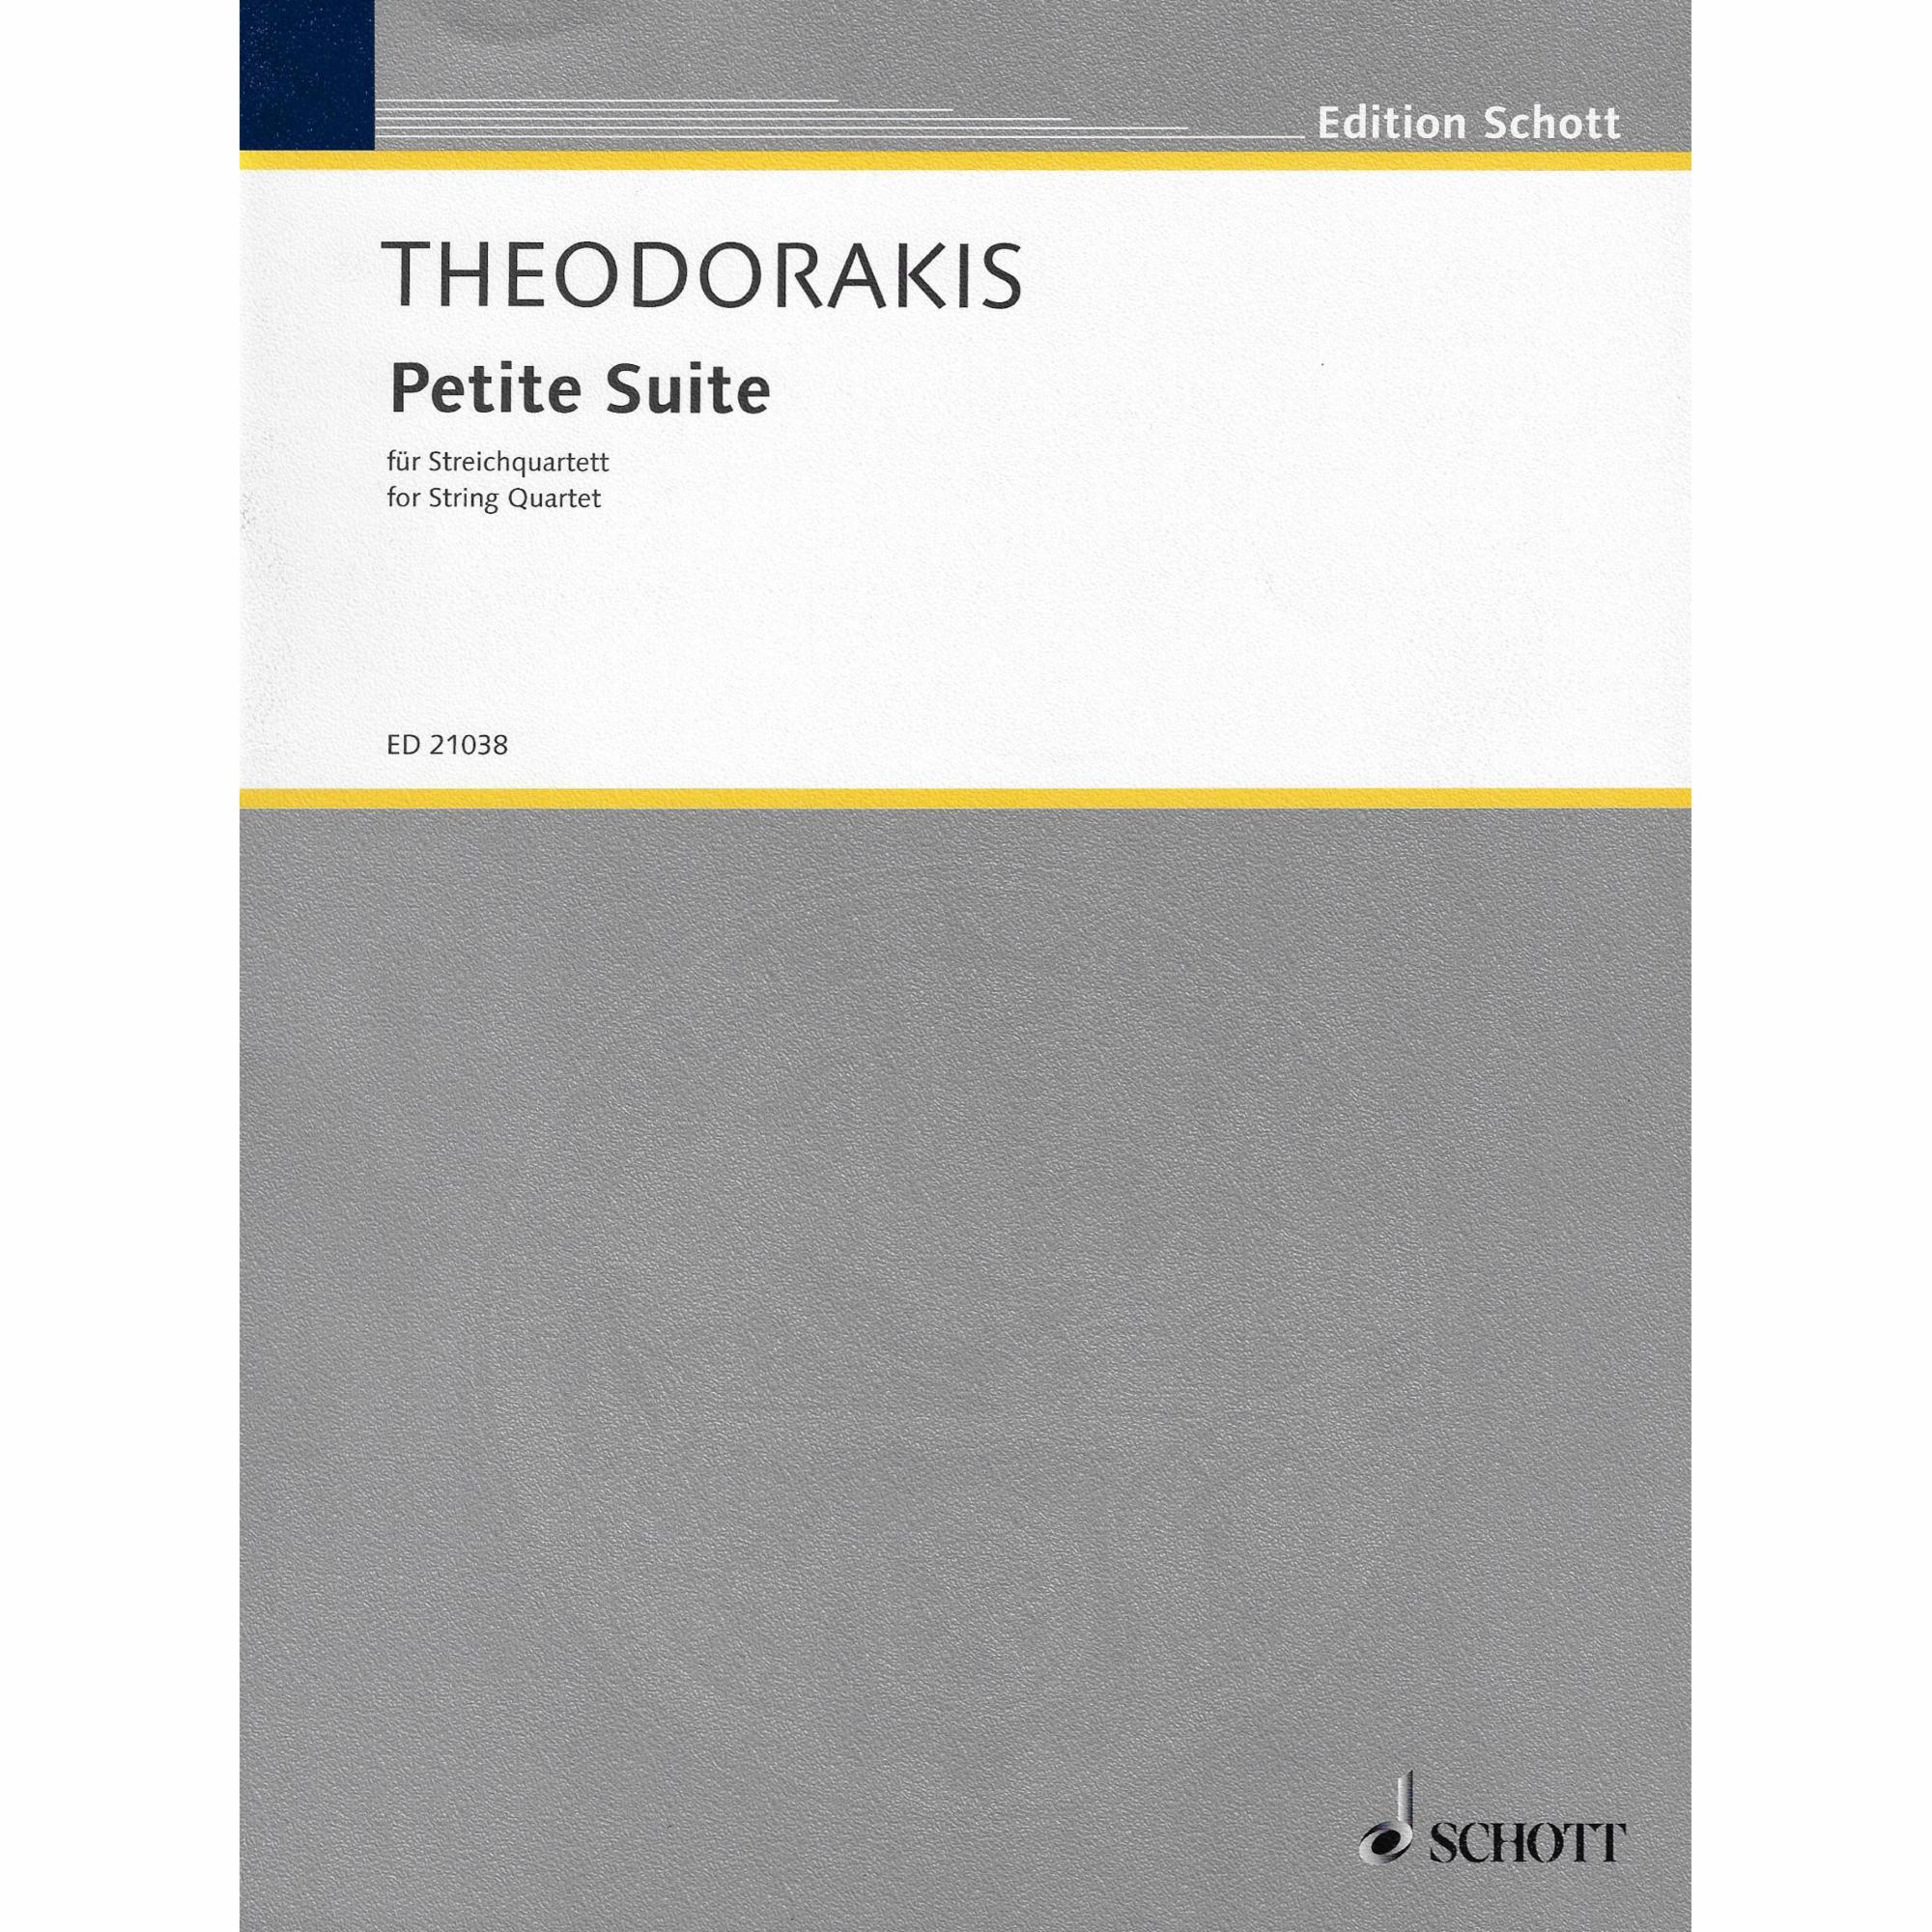 Theodorakis -- Petite Suite for String Quartet